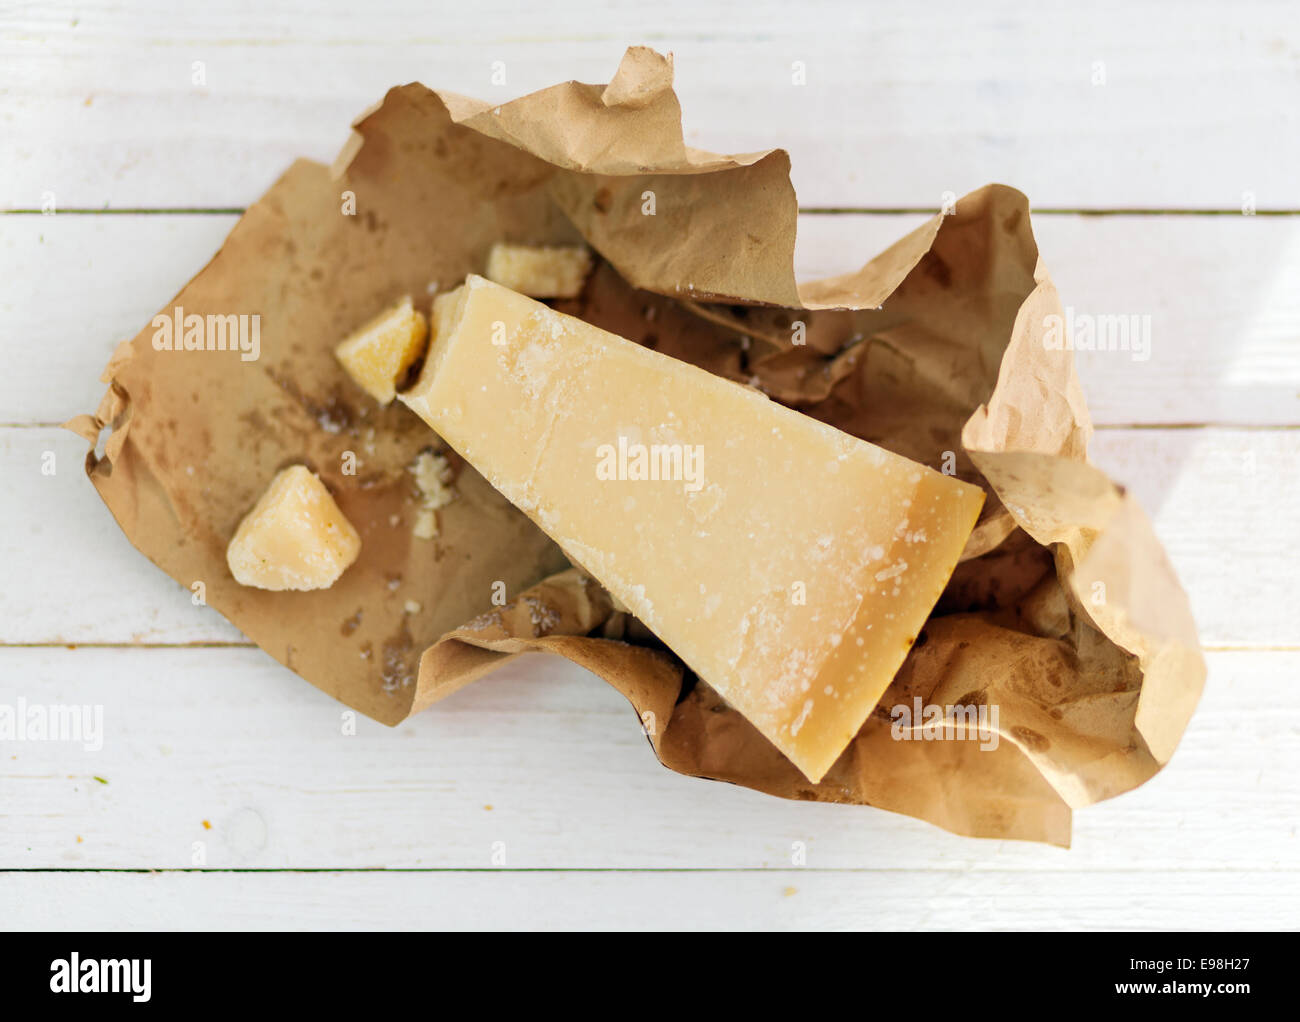 Coin de fromage parmigiano-reggiano granulaire dur largement utilisé dans la cuisine italienne dans une enveloppe de papier brun sur les tableaux blancs vu de passage Banque D'Images